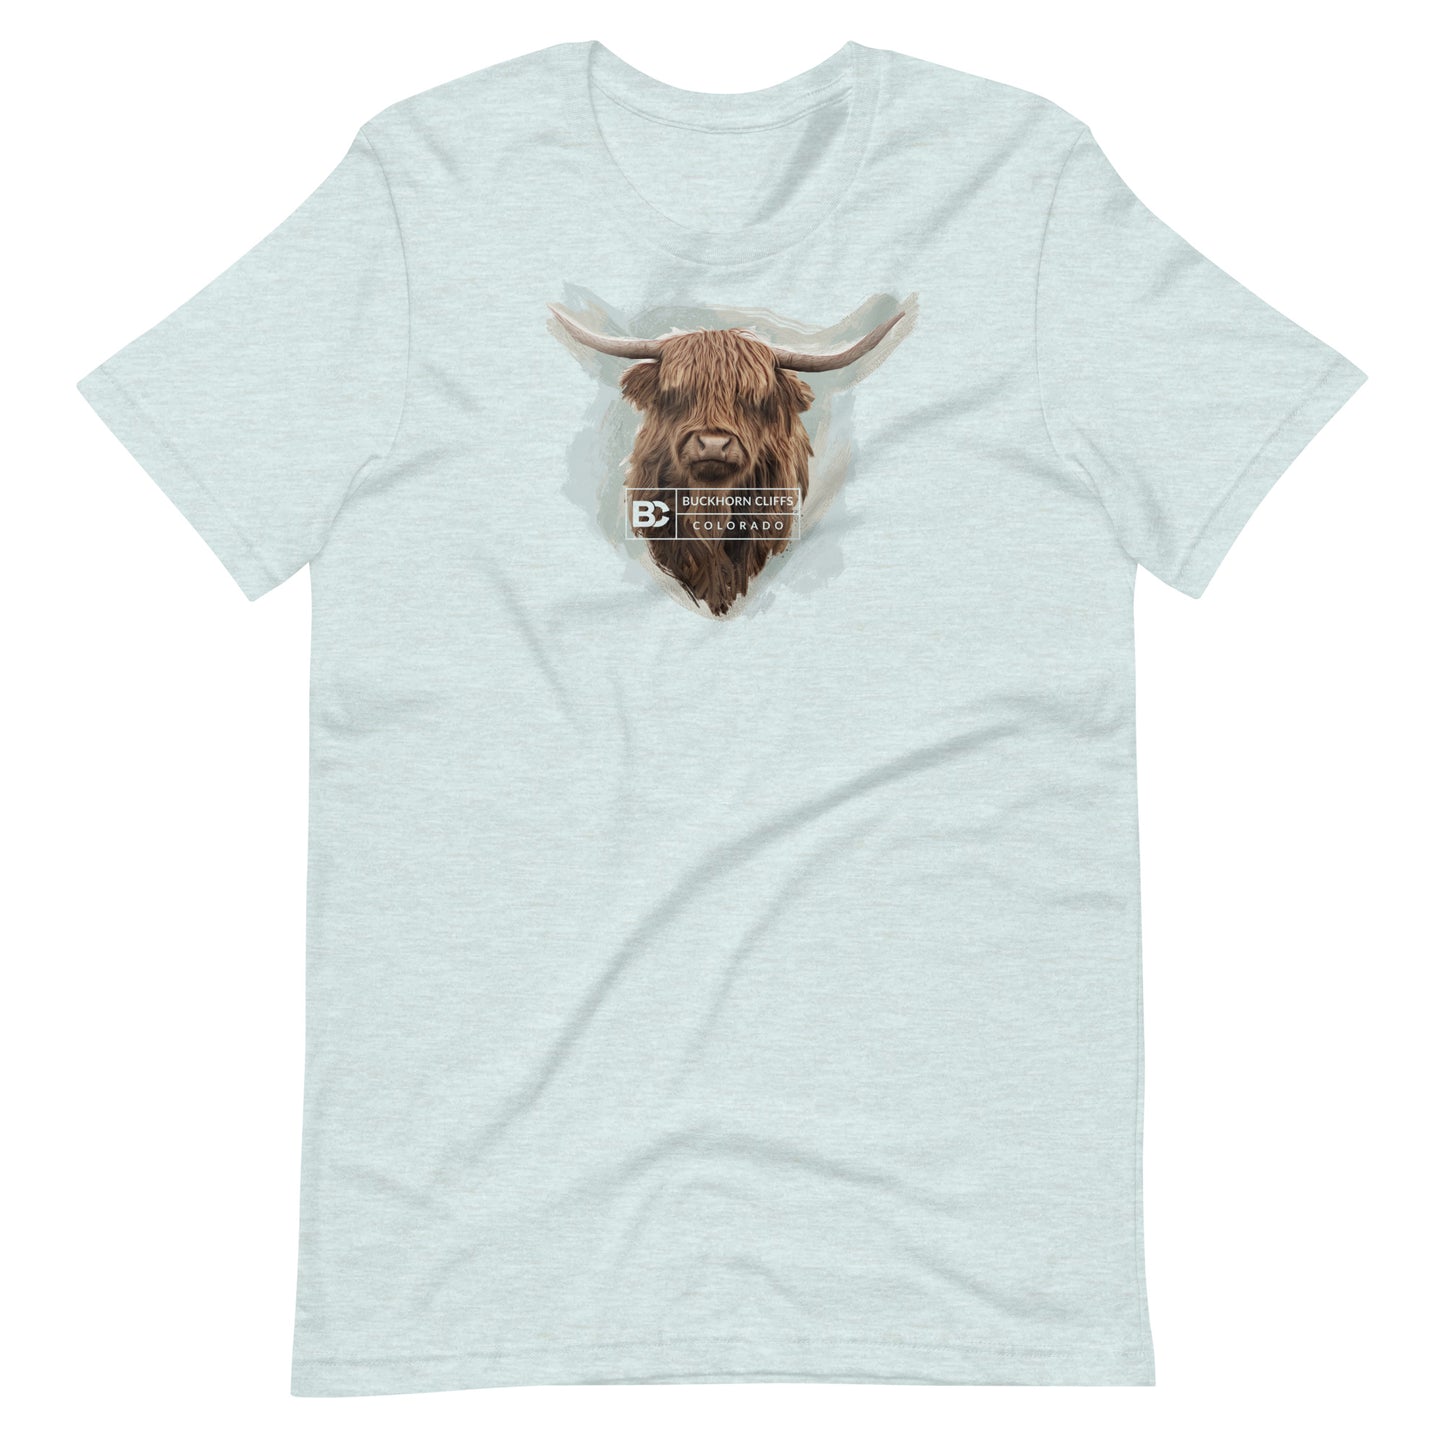 Buckhorn Cliffs Highlands T-Shirt